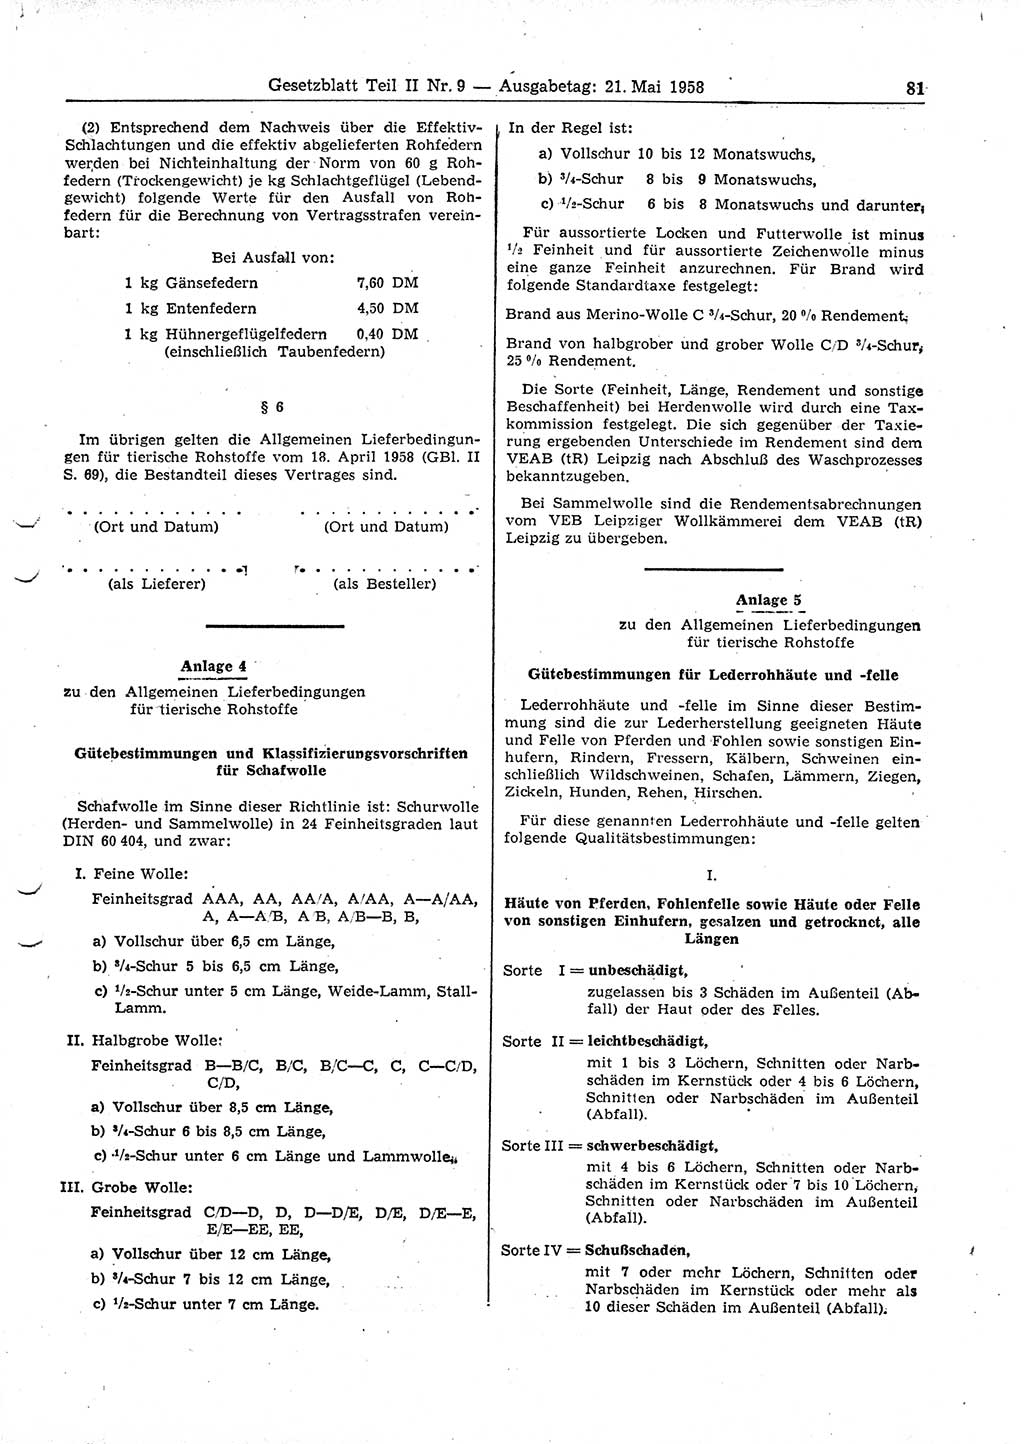 Gesetzblatt (GBl.) der Deutschen Demokratischen Republik (DDR) Teil ⅠⅠ 1958, Seite 81 (GBl. DDR ⅠⅠ 1958, S. 81)